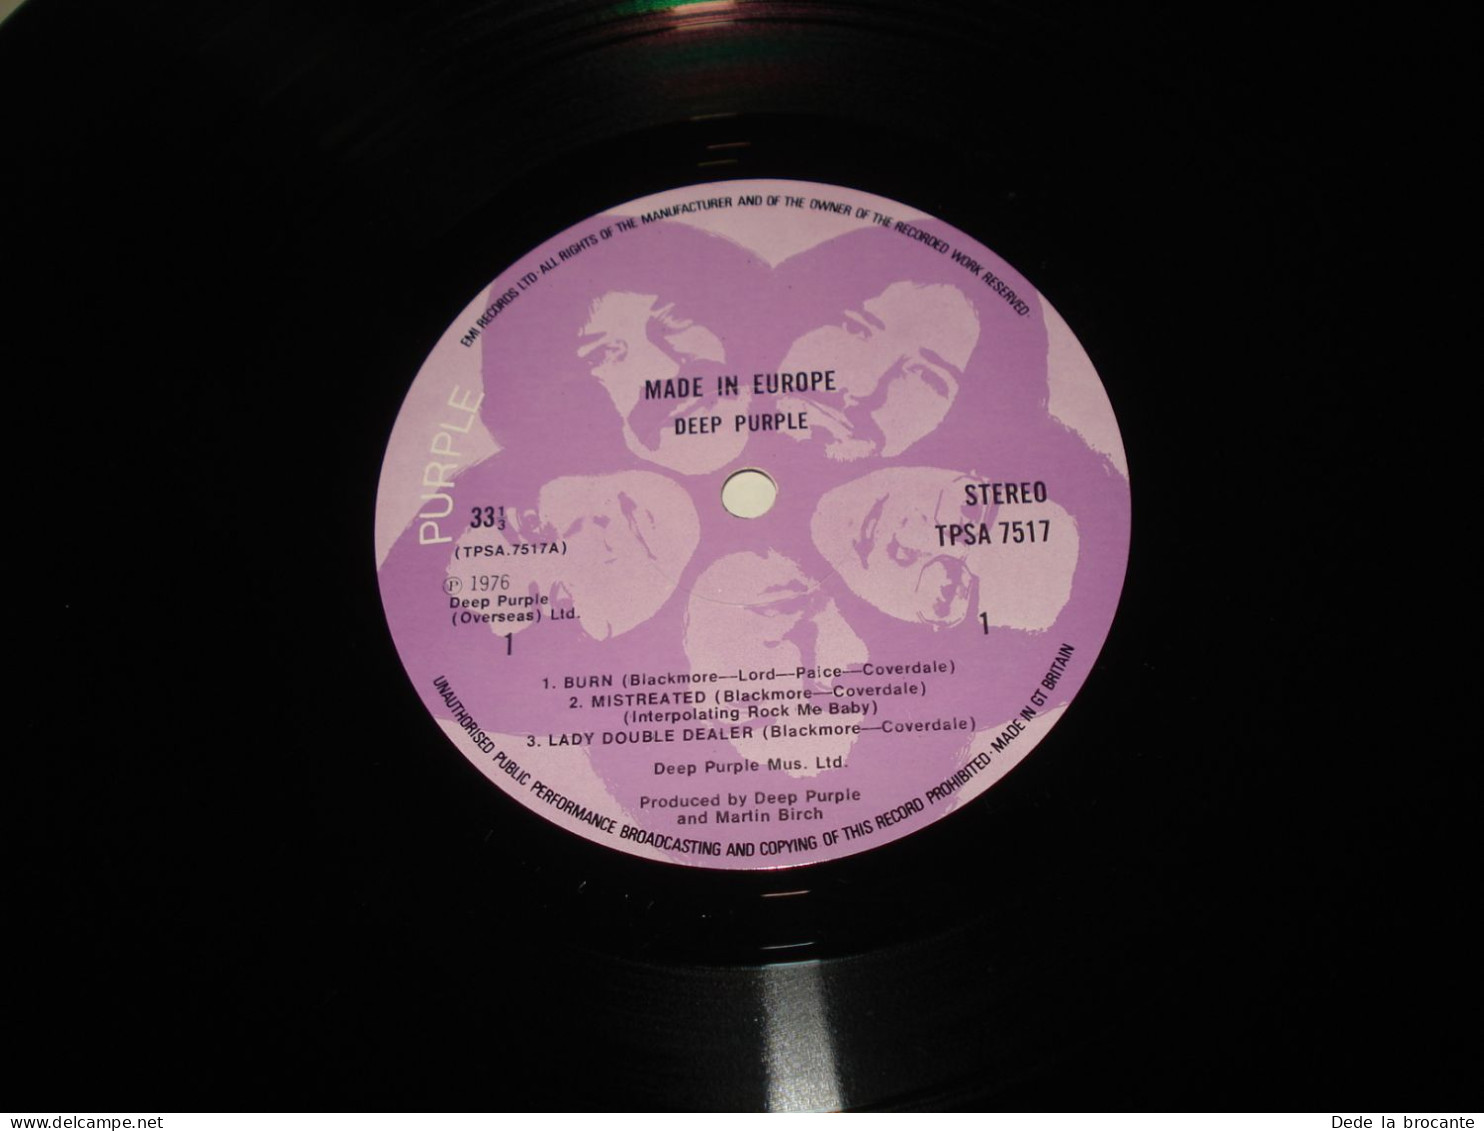 B8 / Deep Purple – Made In Europe - 1  LP  - TPSA 7517 - UK  1976  M/VG++